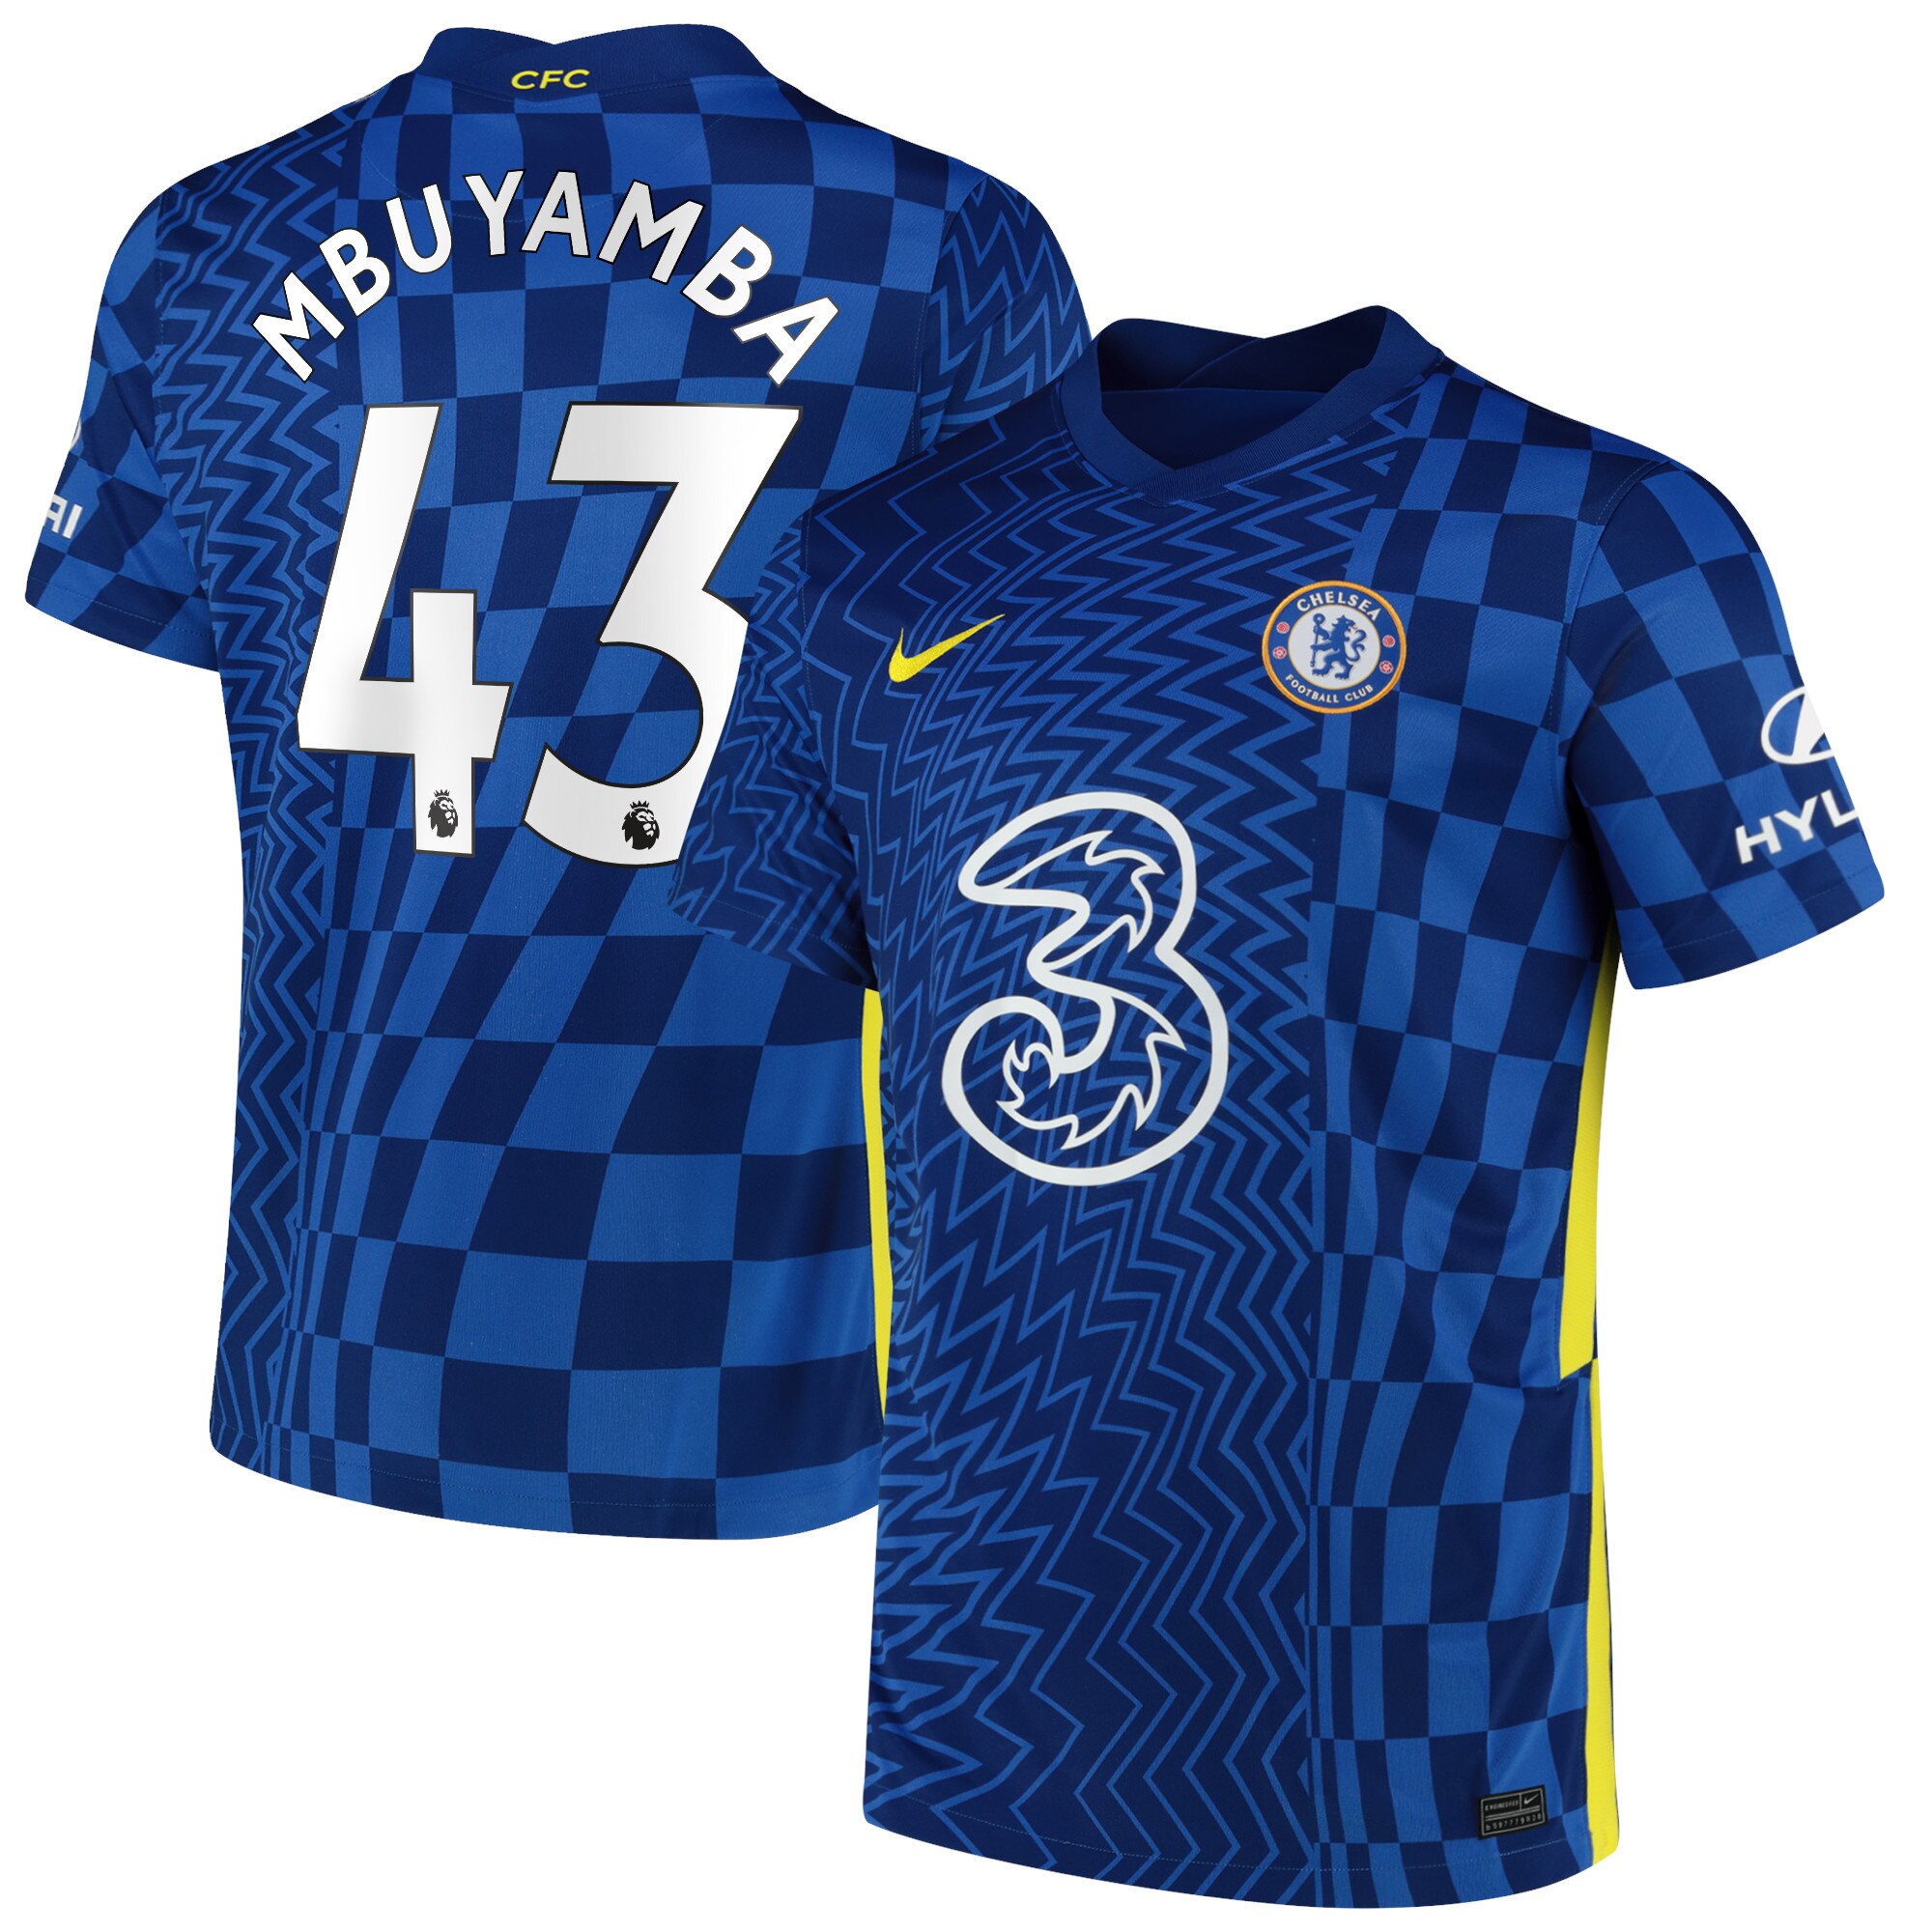 Chelsea Home Stadium Shirt 2021-22 with Mbuyamba 43 printing